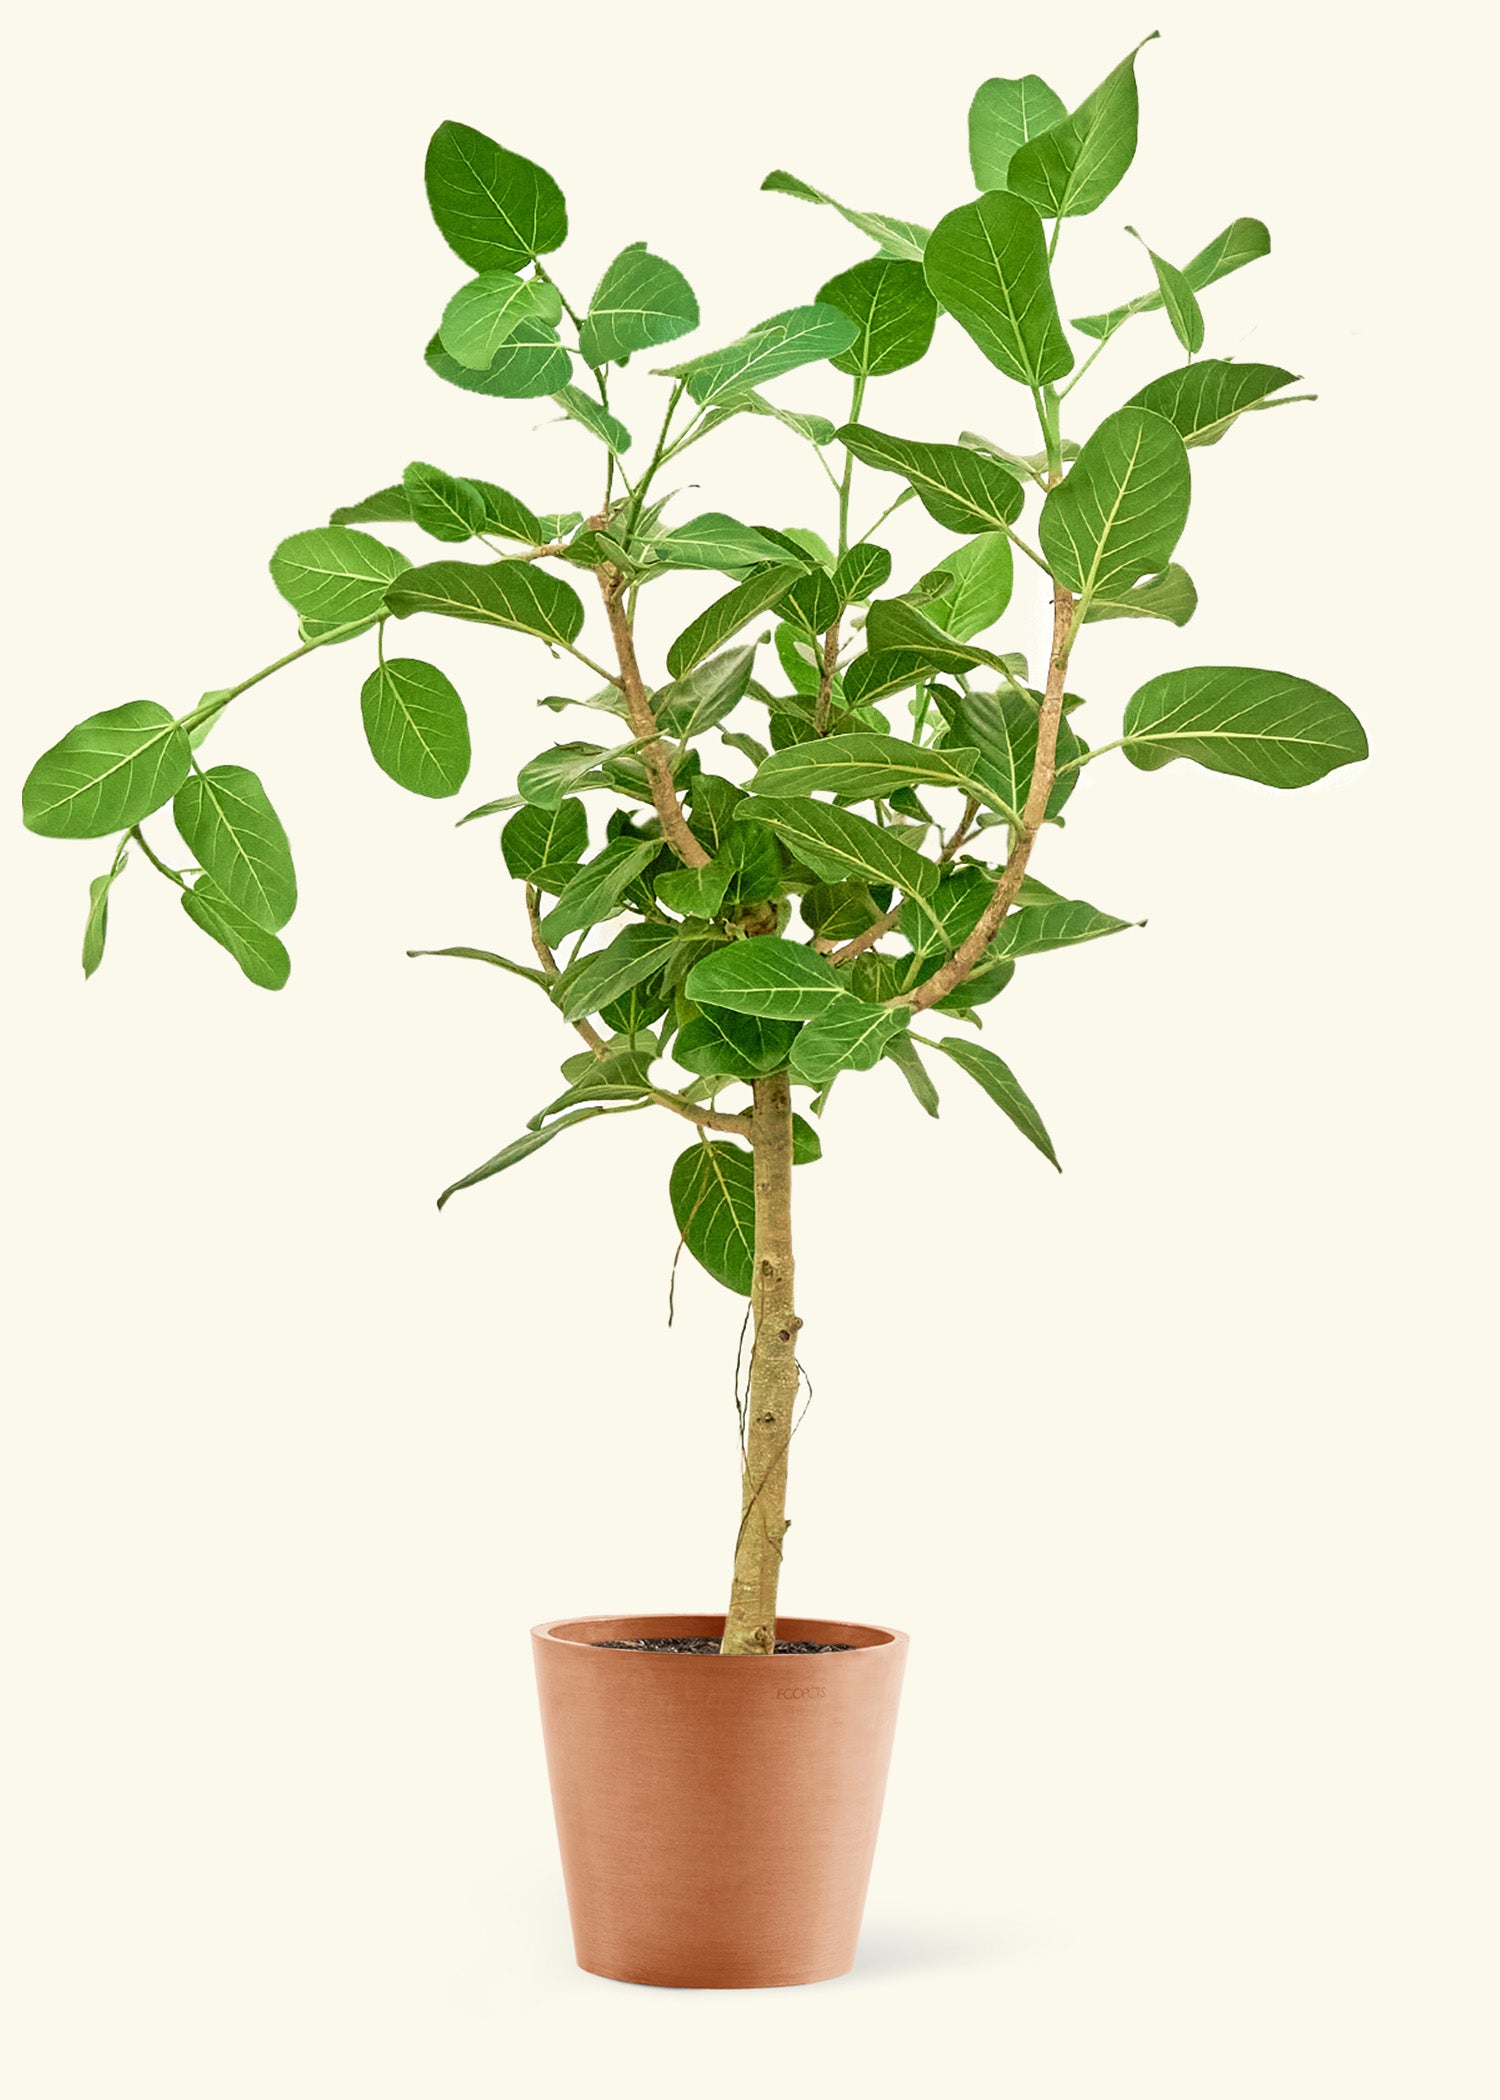 Large Ficus 'Audrey' Plant in a terracotta pot.